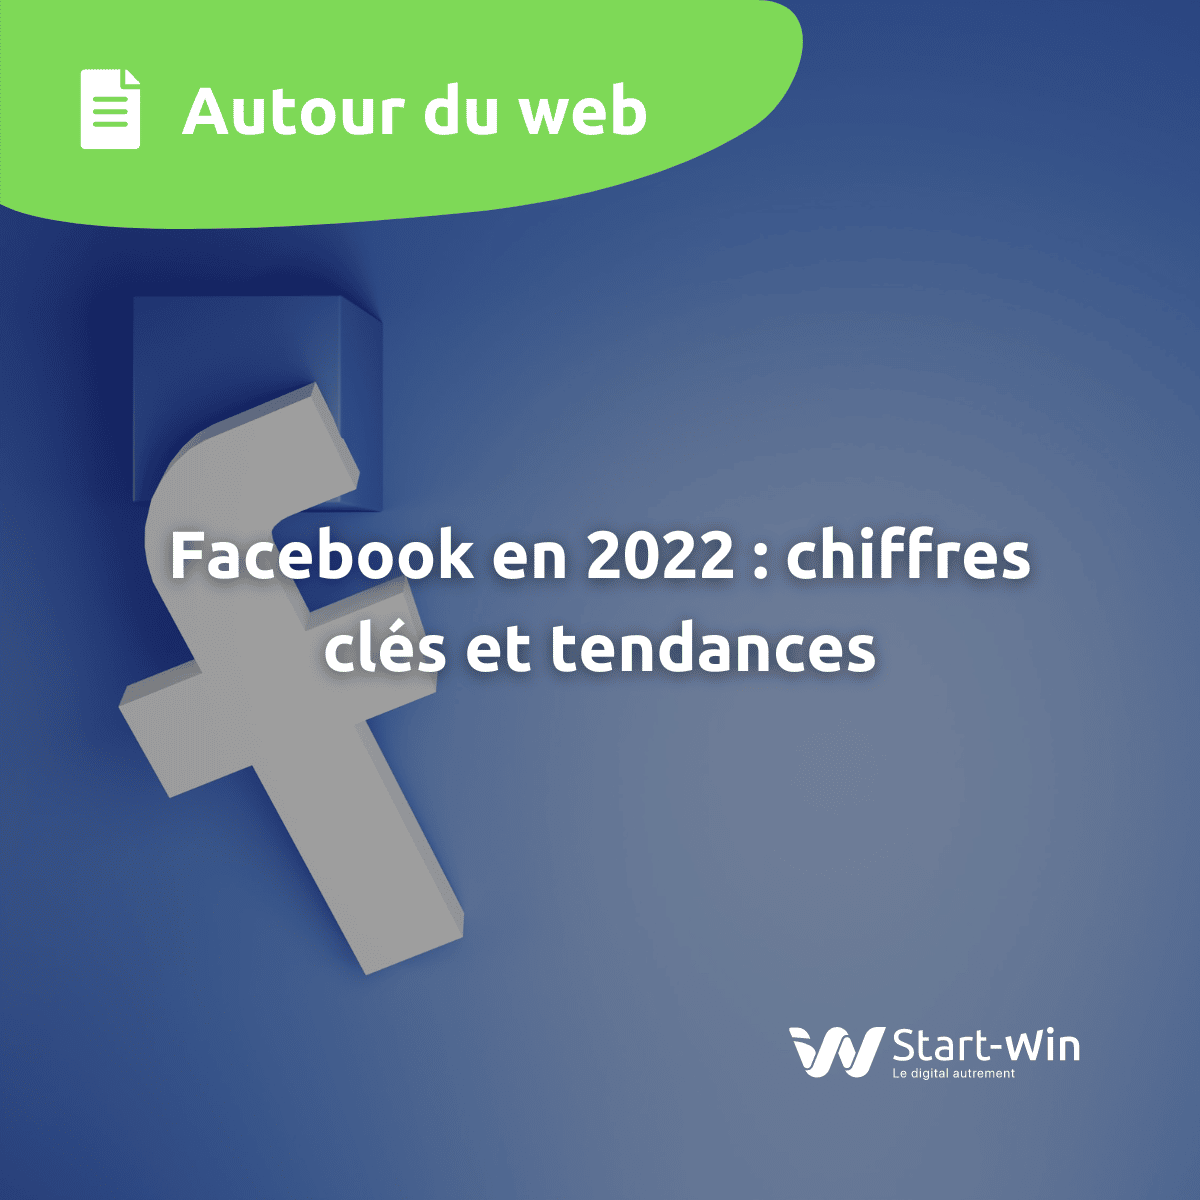 facebook en 2022 chiffres clés et tendances image